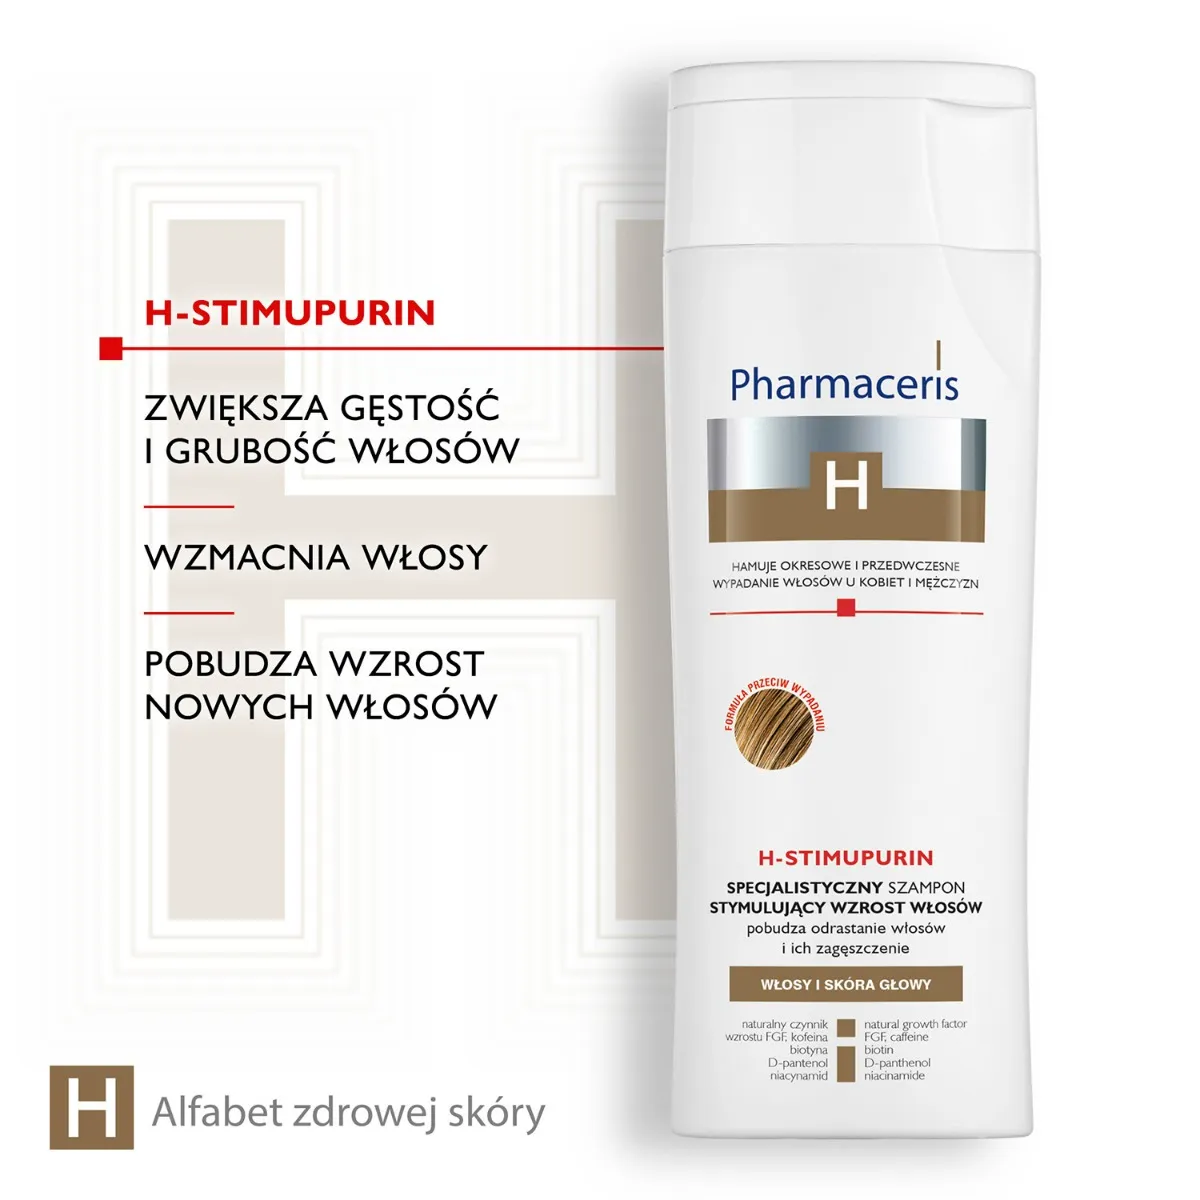 pharmaceris h h stimupurin specjalistyczny szampon stymulujący wzrost włosów